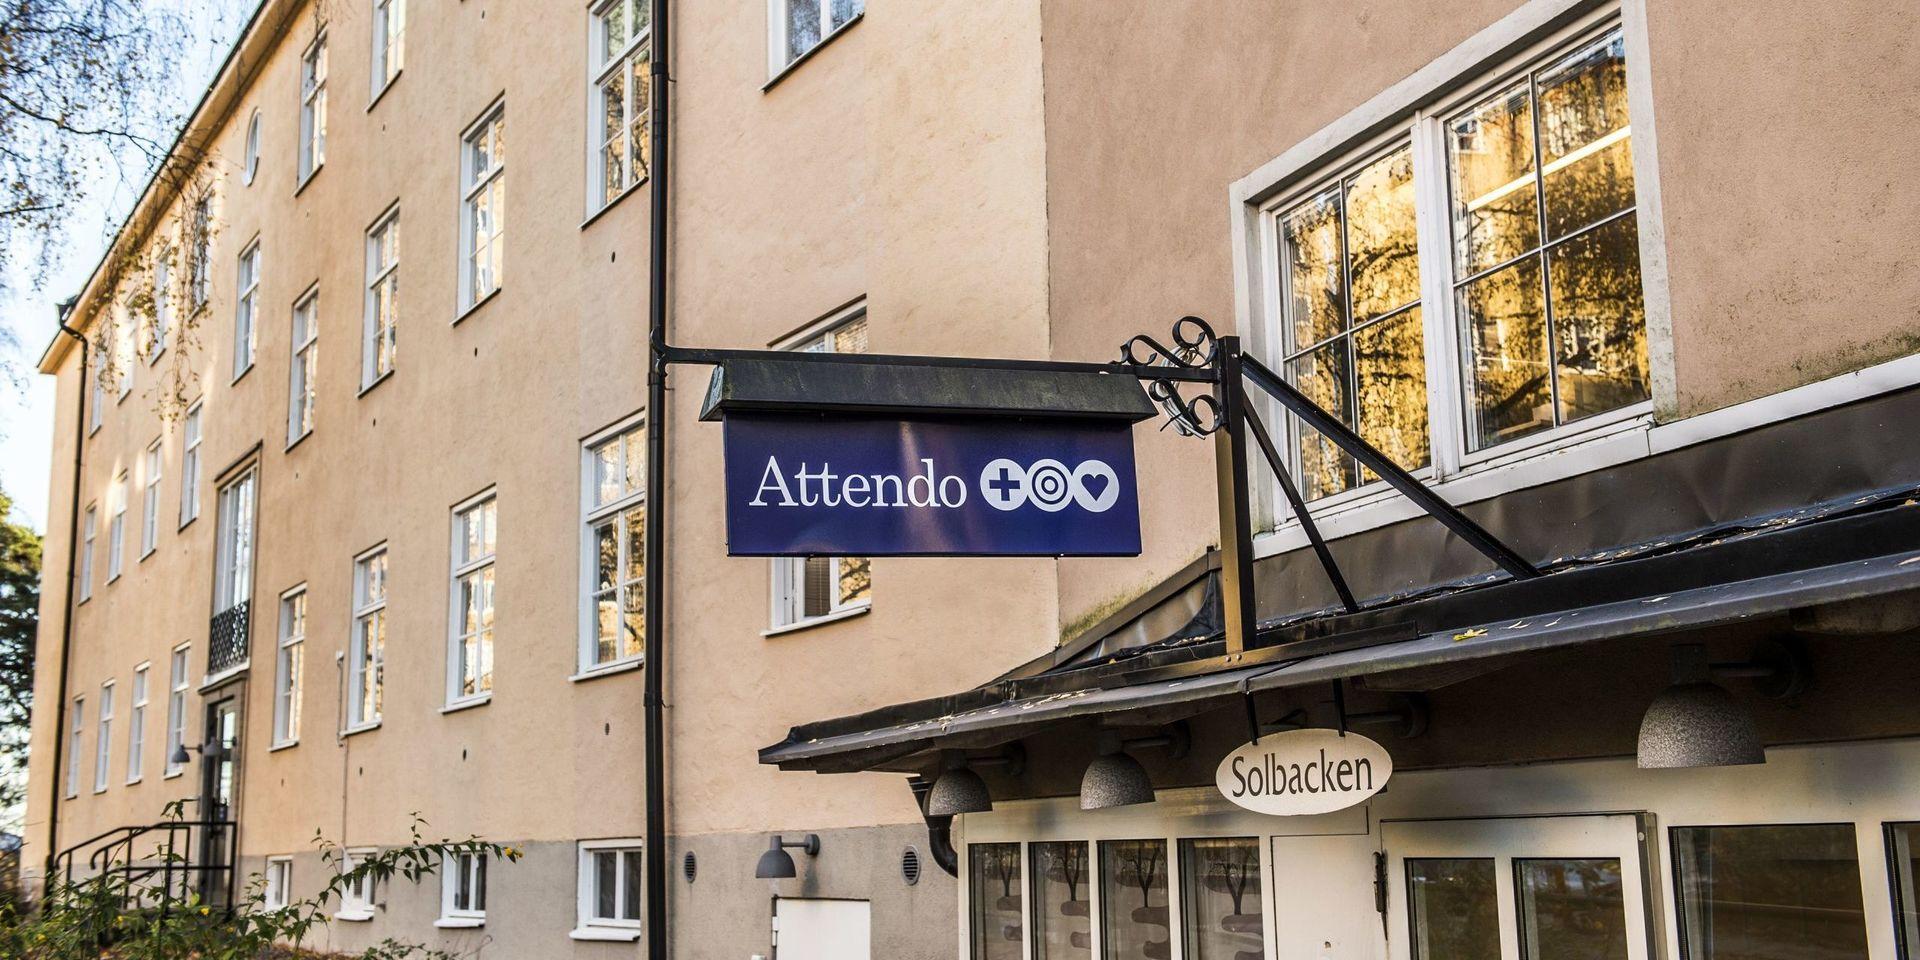 STOCKHOLM 20151111
Attendo-boende på Stadshagsvägen 5
Foto: Lars Pehrson / SvD / TT / Kod 30152
** OUT DN, Dagens Industri (även arkiv)  **